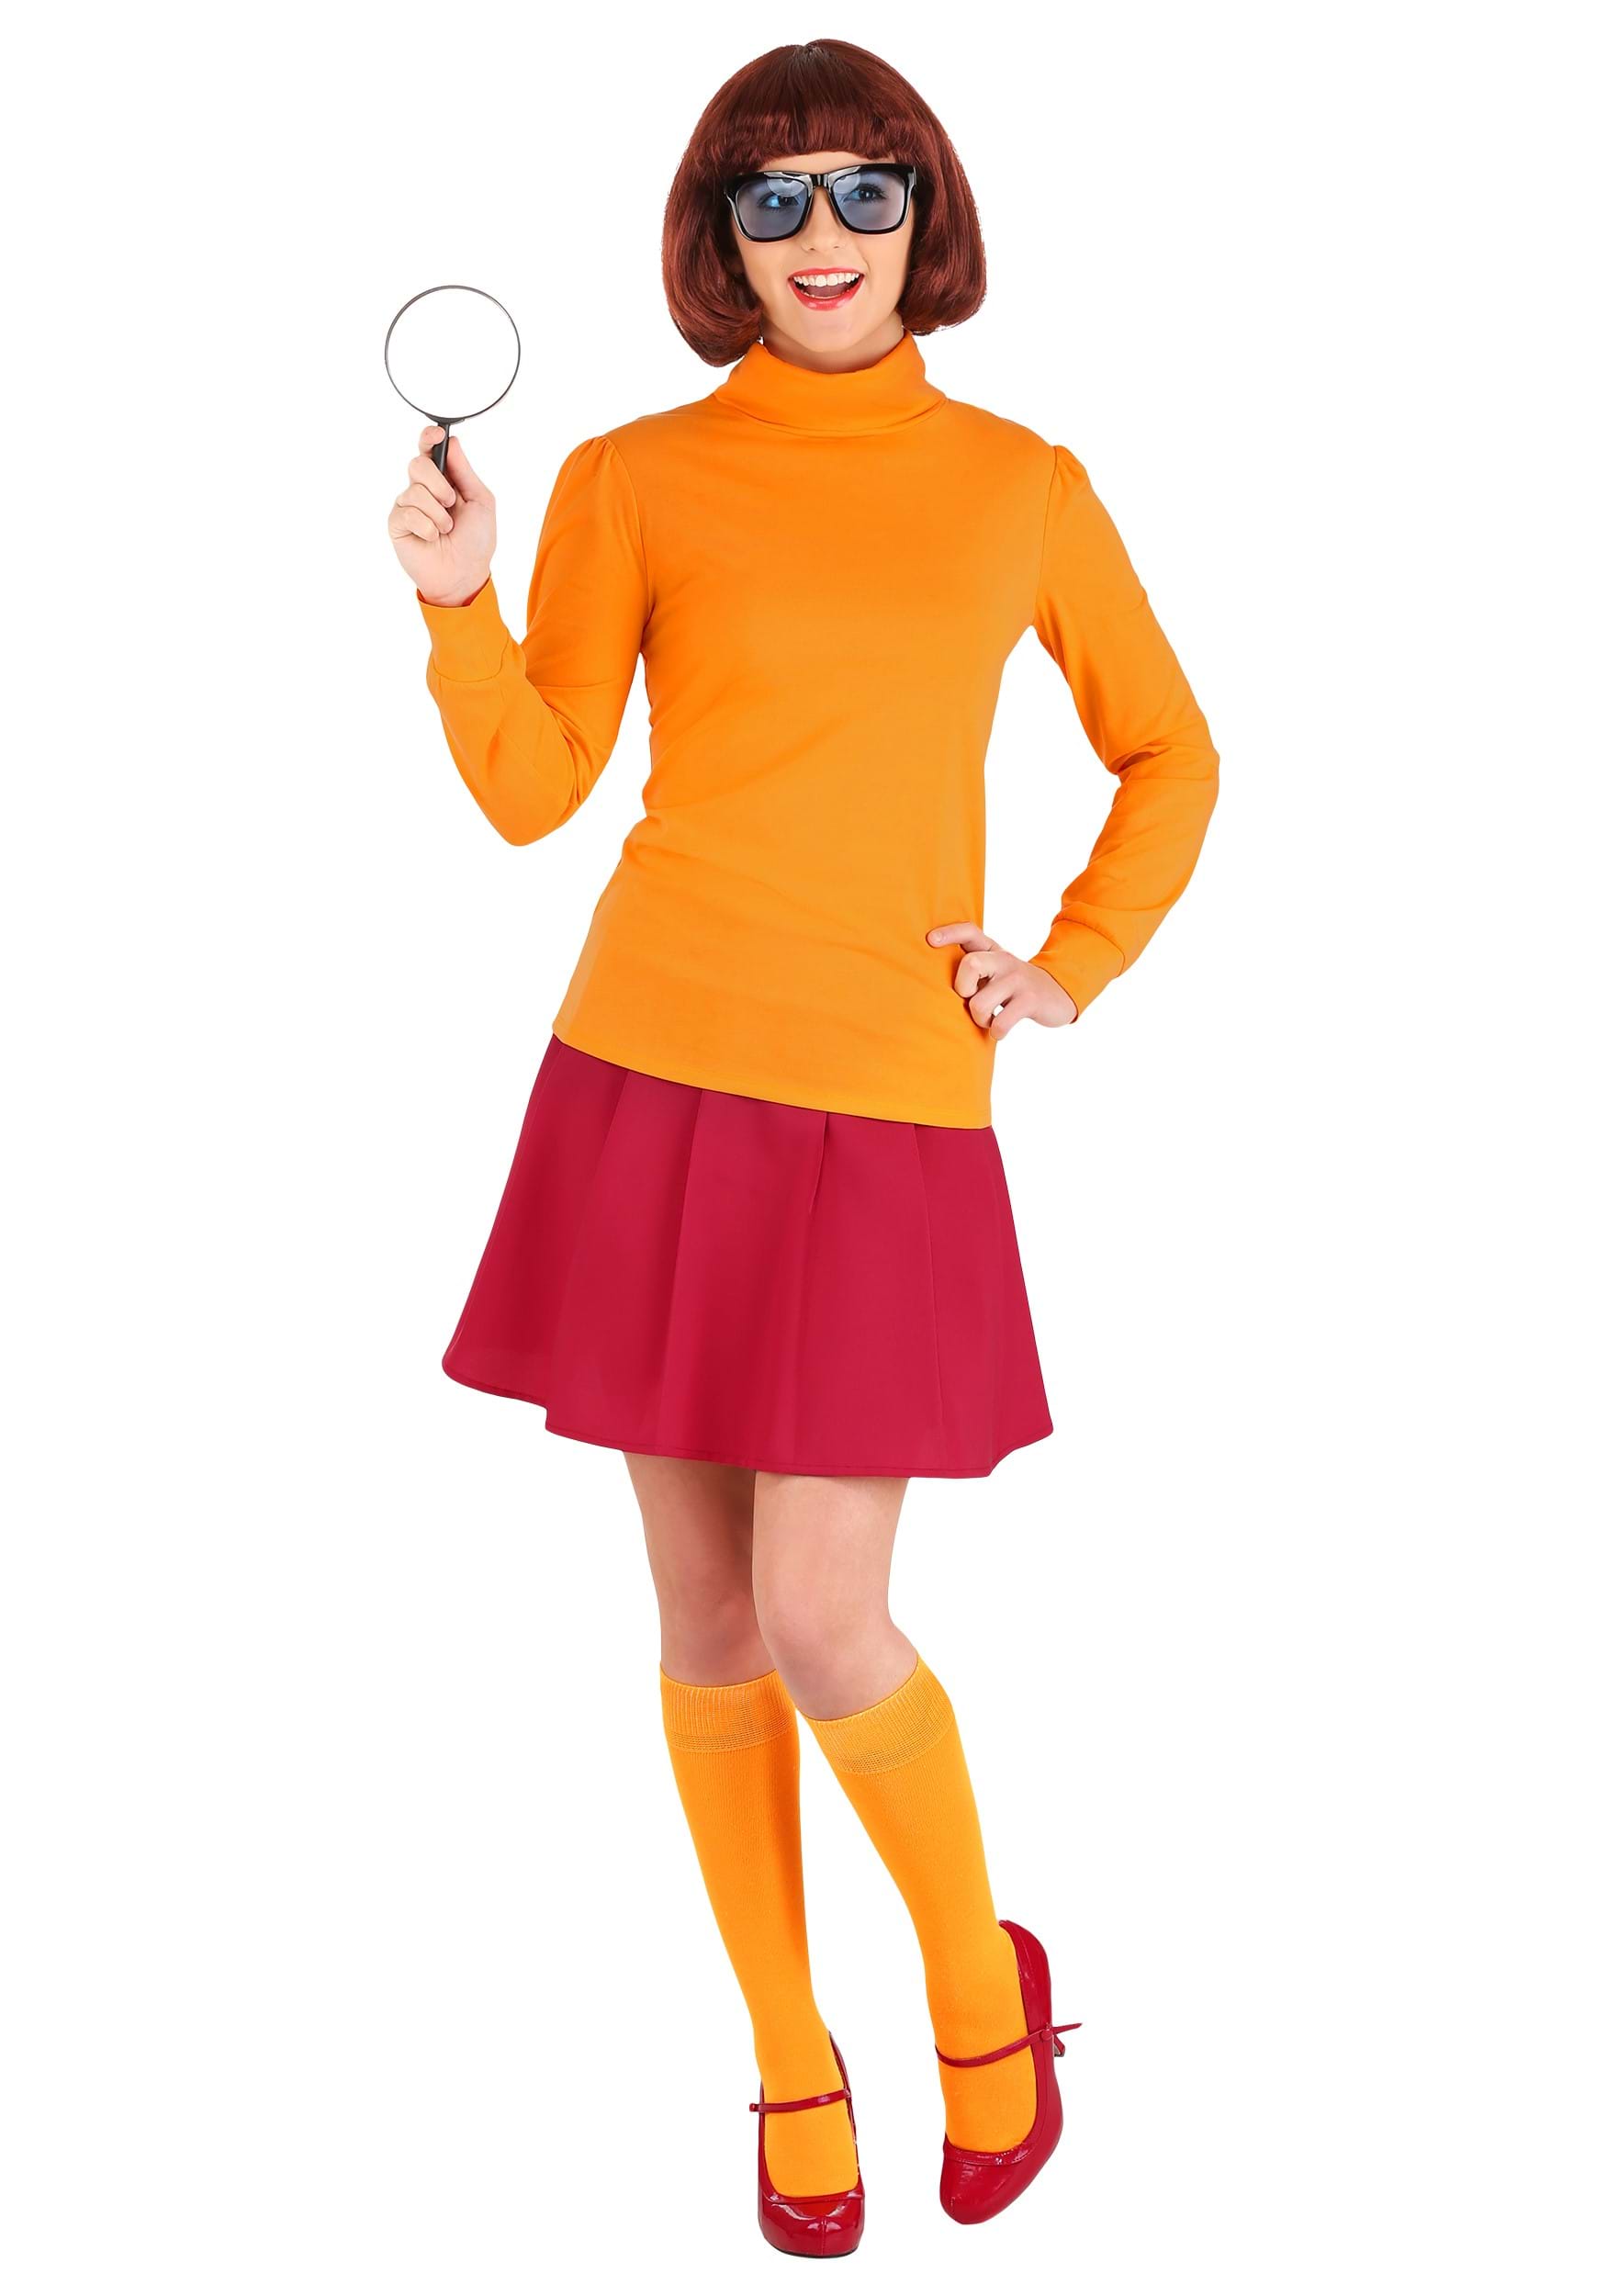 Velma from Scooby-Doo